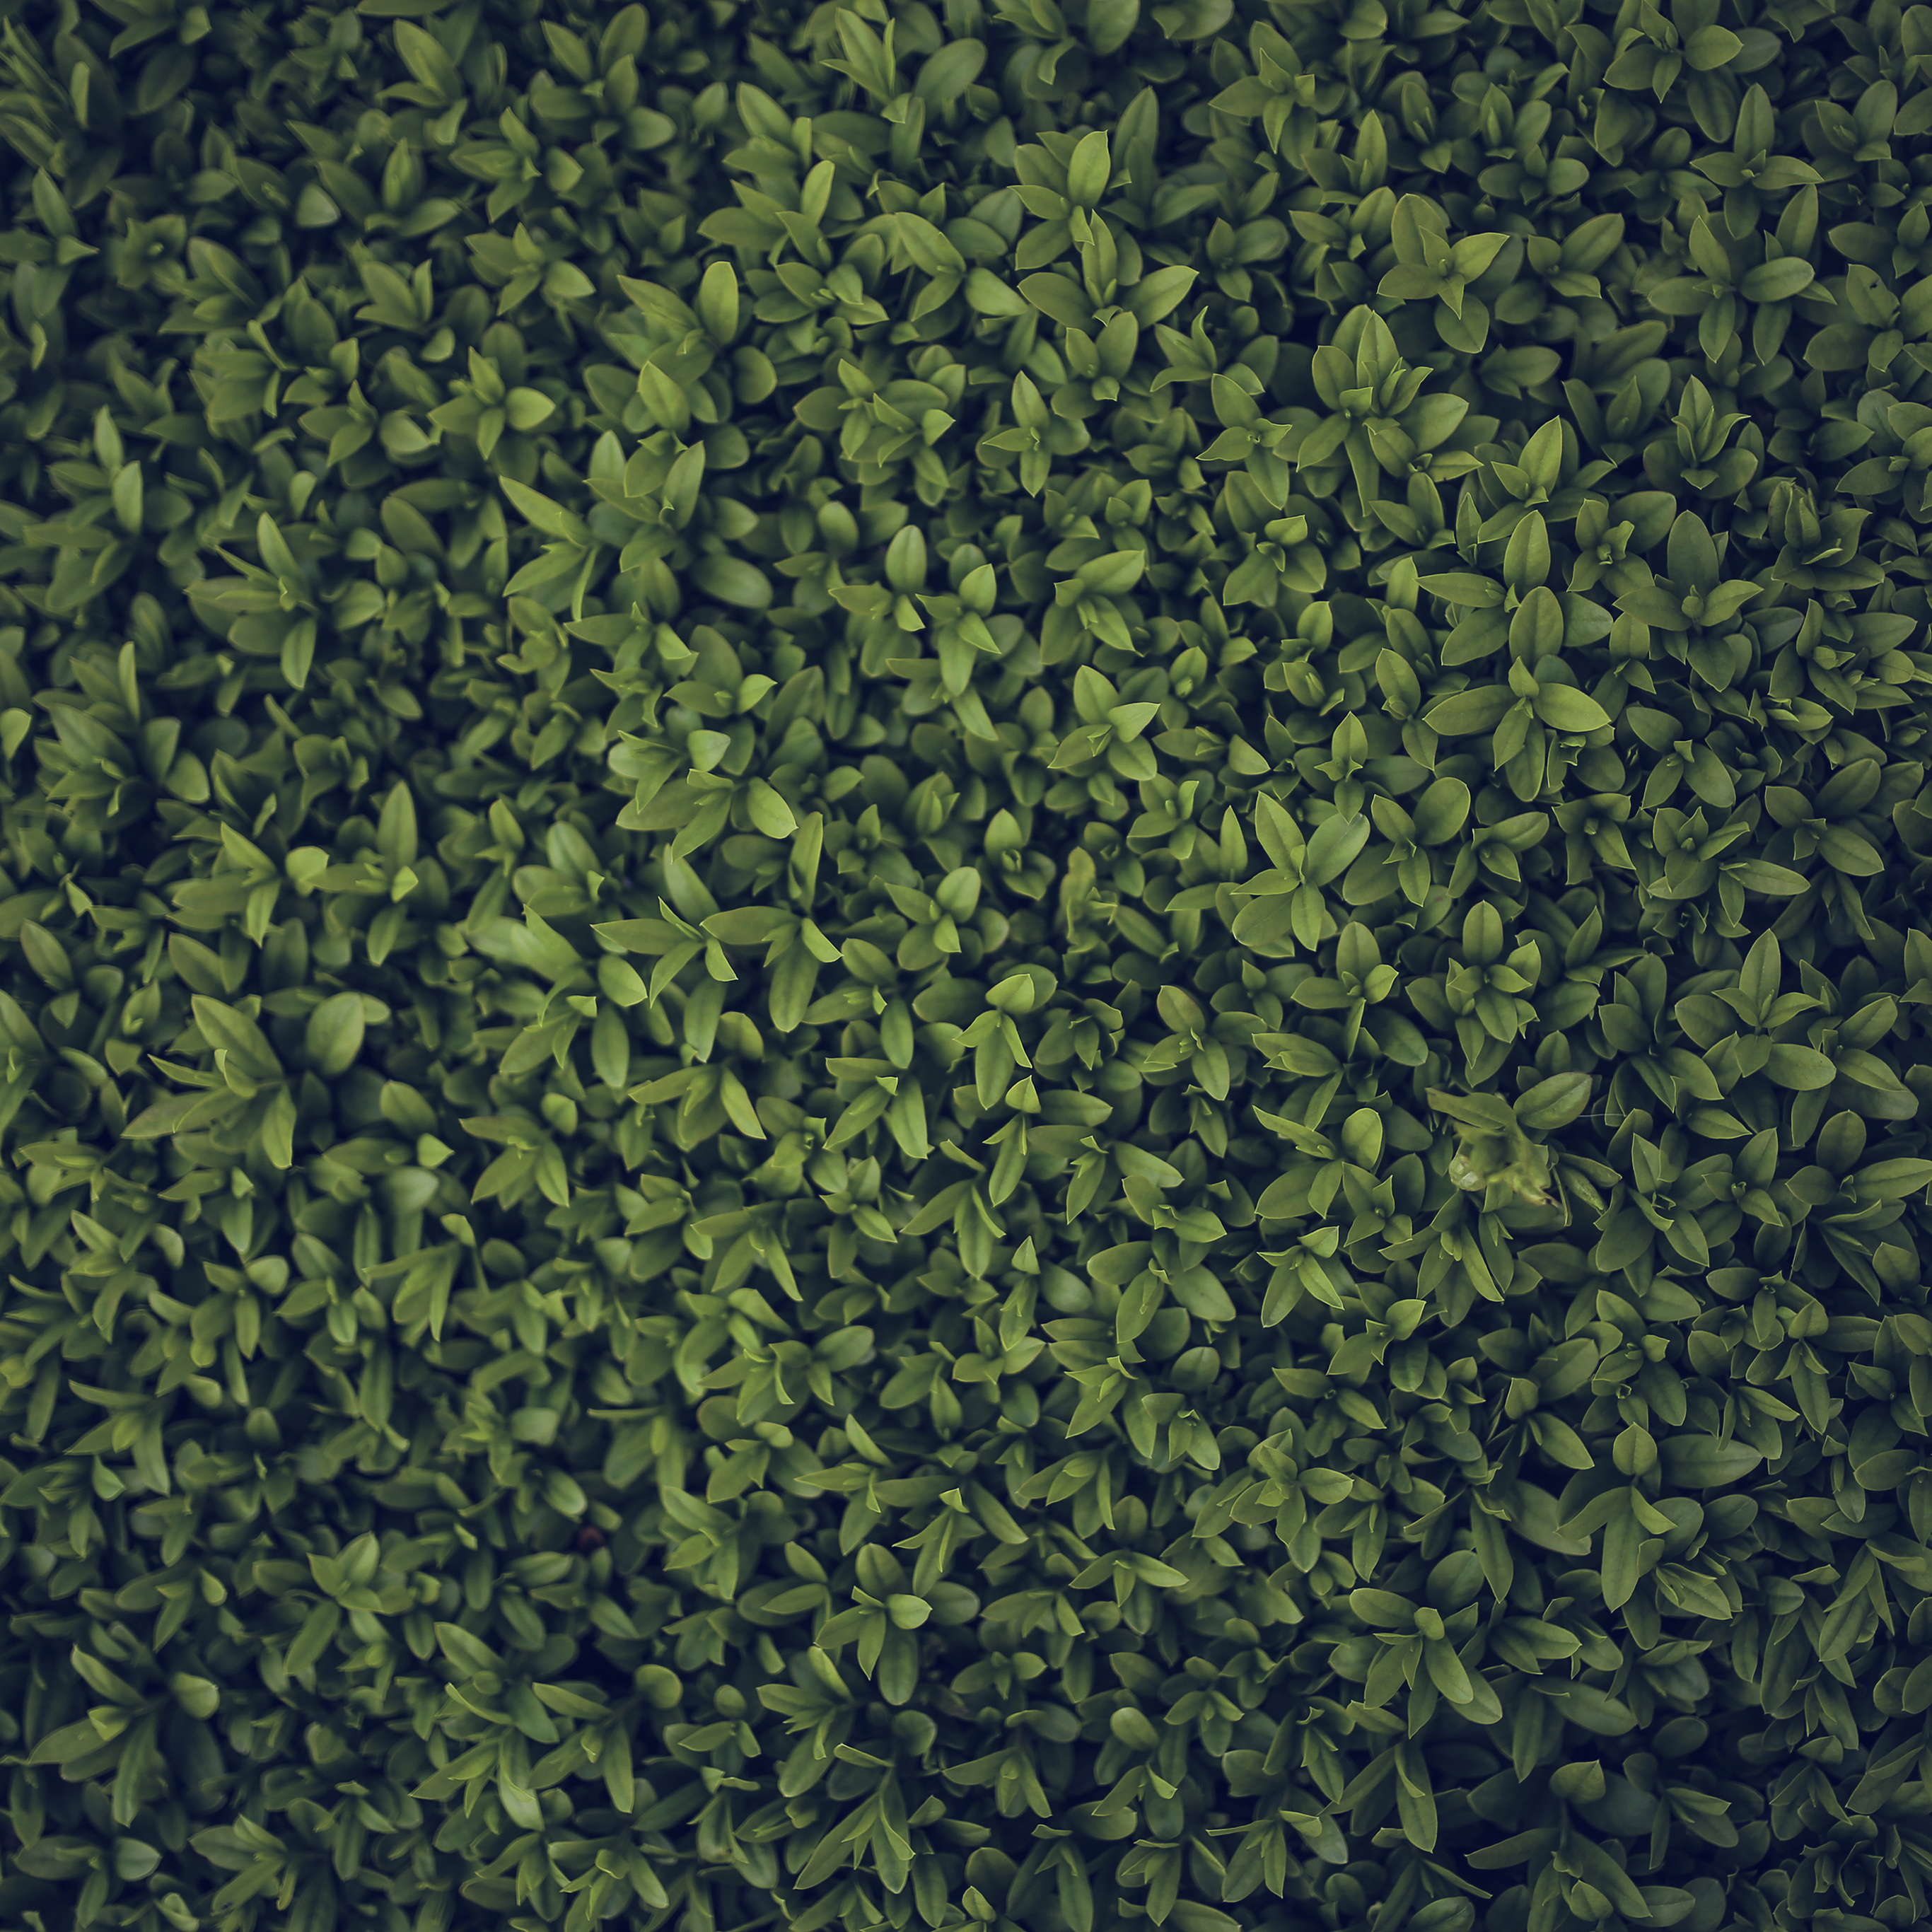 Grass Hd Wallpaper For Iphone 8 - HD Wallpaper 